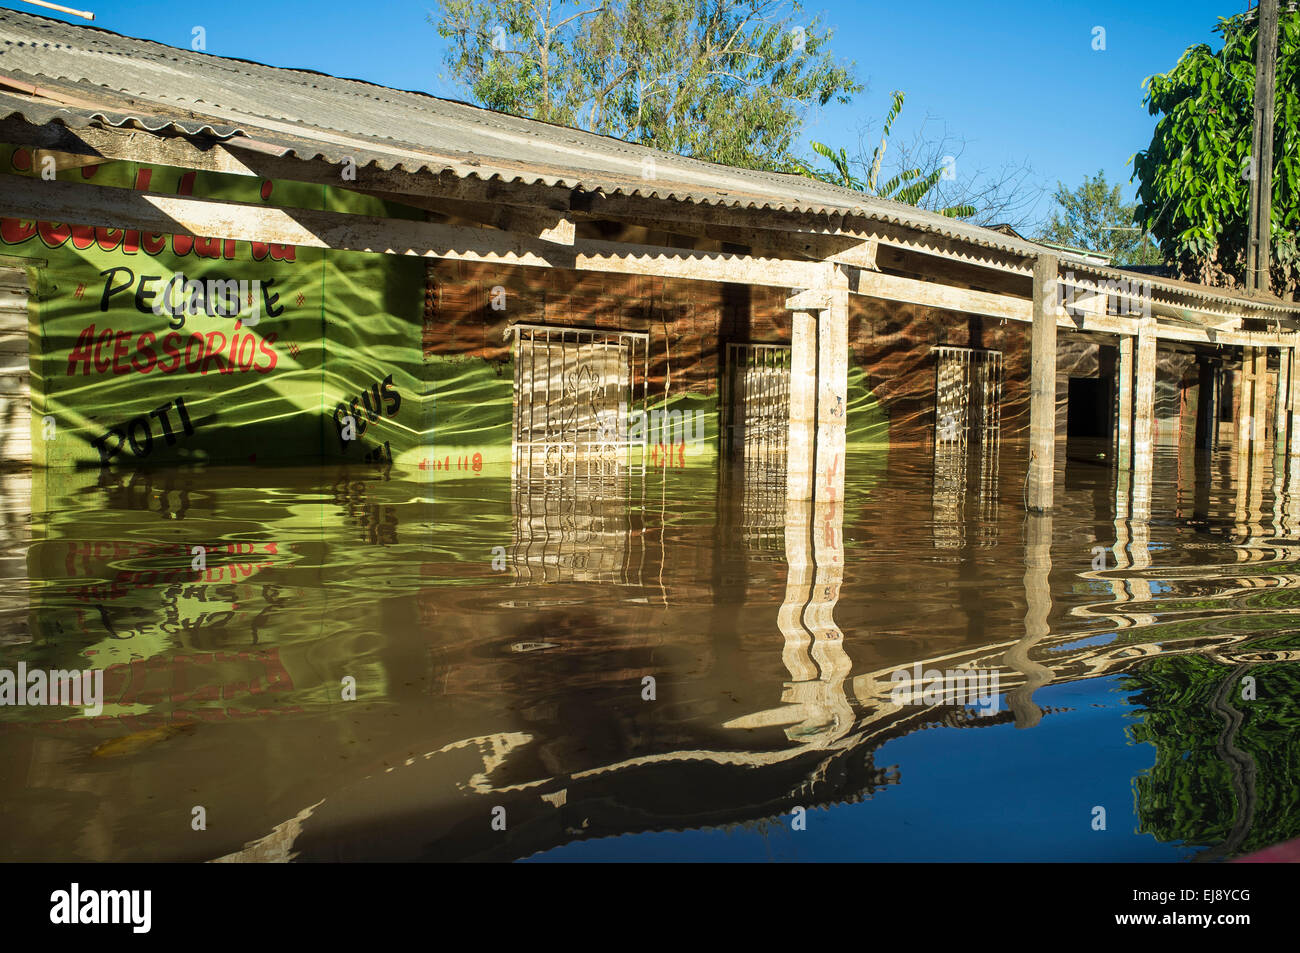 2015 Inondations en Amazonie brésilienne, maison inondée, Deus ( Dieu ) écrit sur le mur. La ligne d'inondation au Triangulo Novo district. La ville de Rio Branco, l'état d'Acre. Les inondations ont touché des milliers de personnes dans l'Etat d'Acre, dans le nord du Brésil, depuis le 23 février 2015, lorsque certaines des rivières de l'état, en particulier l'Acre, la rivière a débordé. De plus fortes précipitations a forcé les niveaux de la rivière plus haut encore, et le 03 mars 2015, le gouvernement fédéral du Brésil a déclaré l'état d'urgence dans l'état d'Acre, où les conditions d'inondations situation a été décrite comme la pire en 132 ans. Banque D'Images